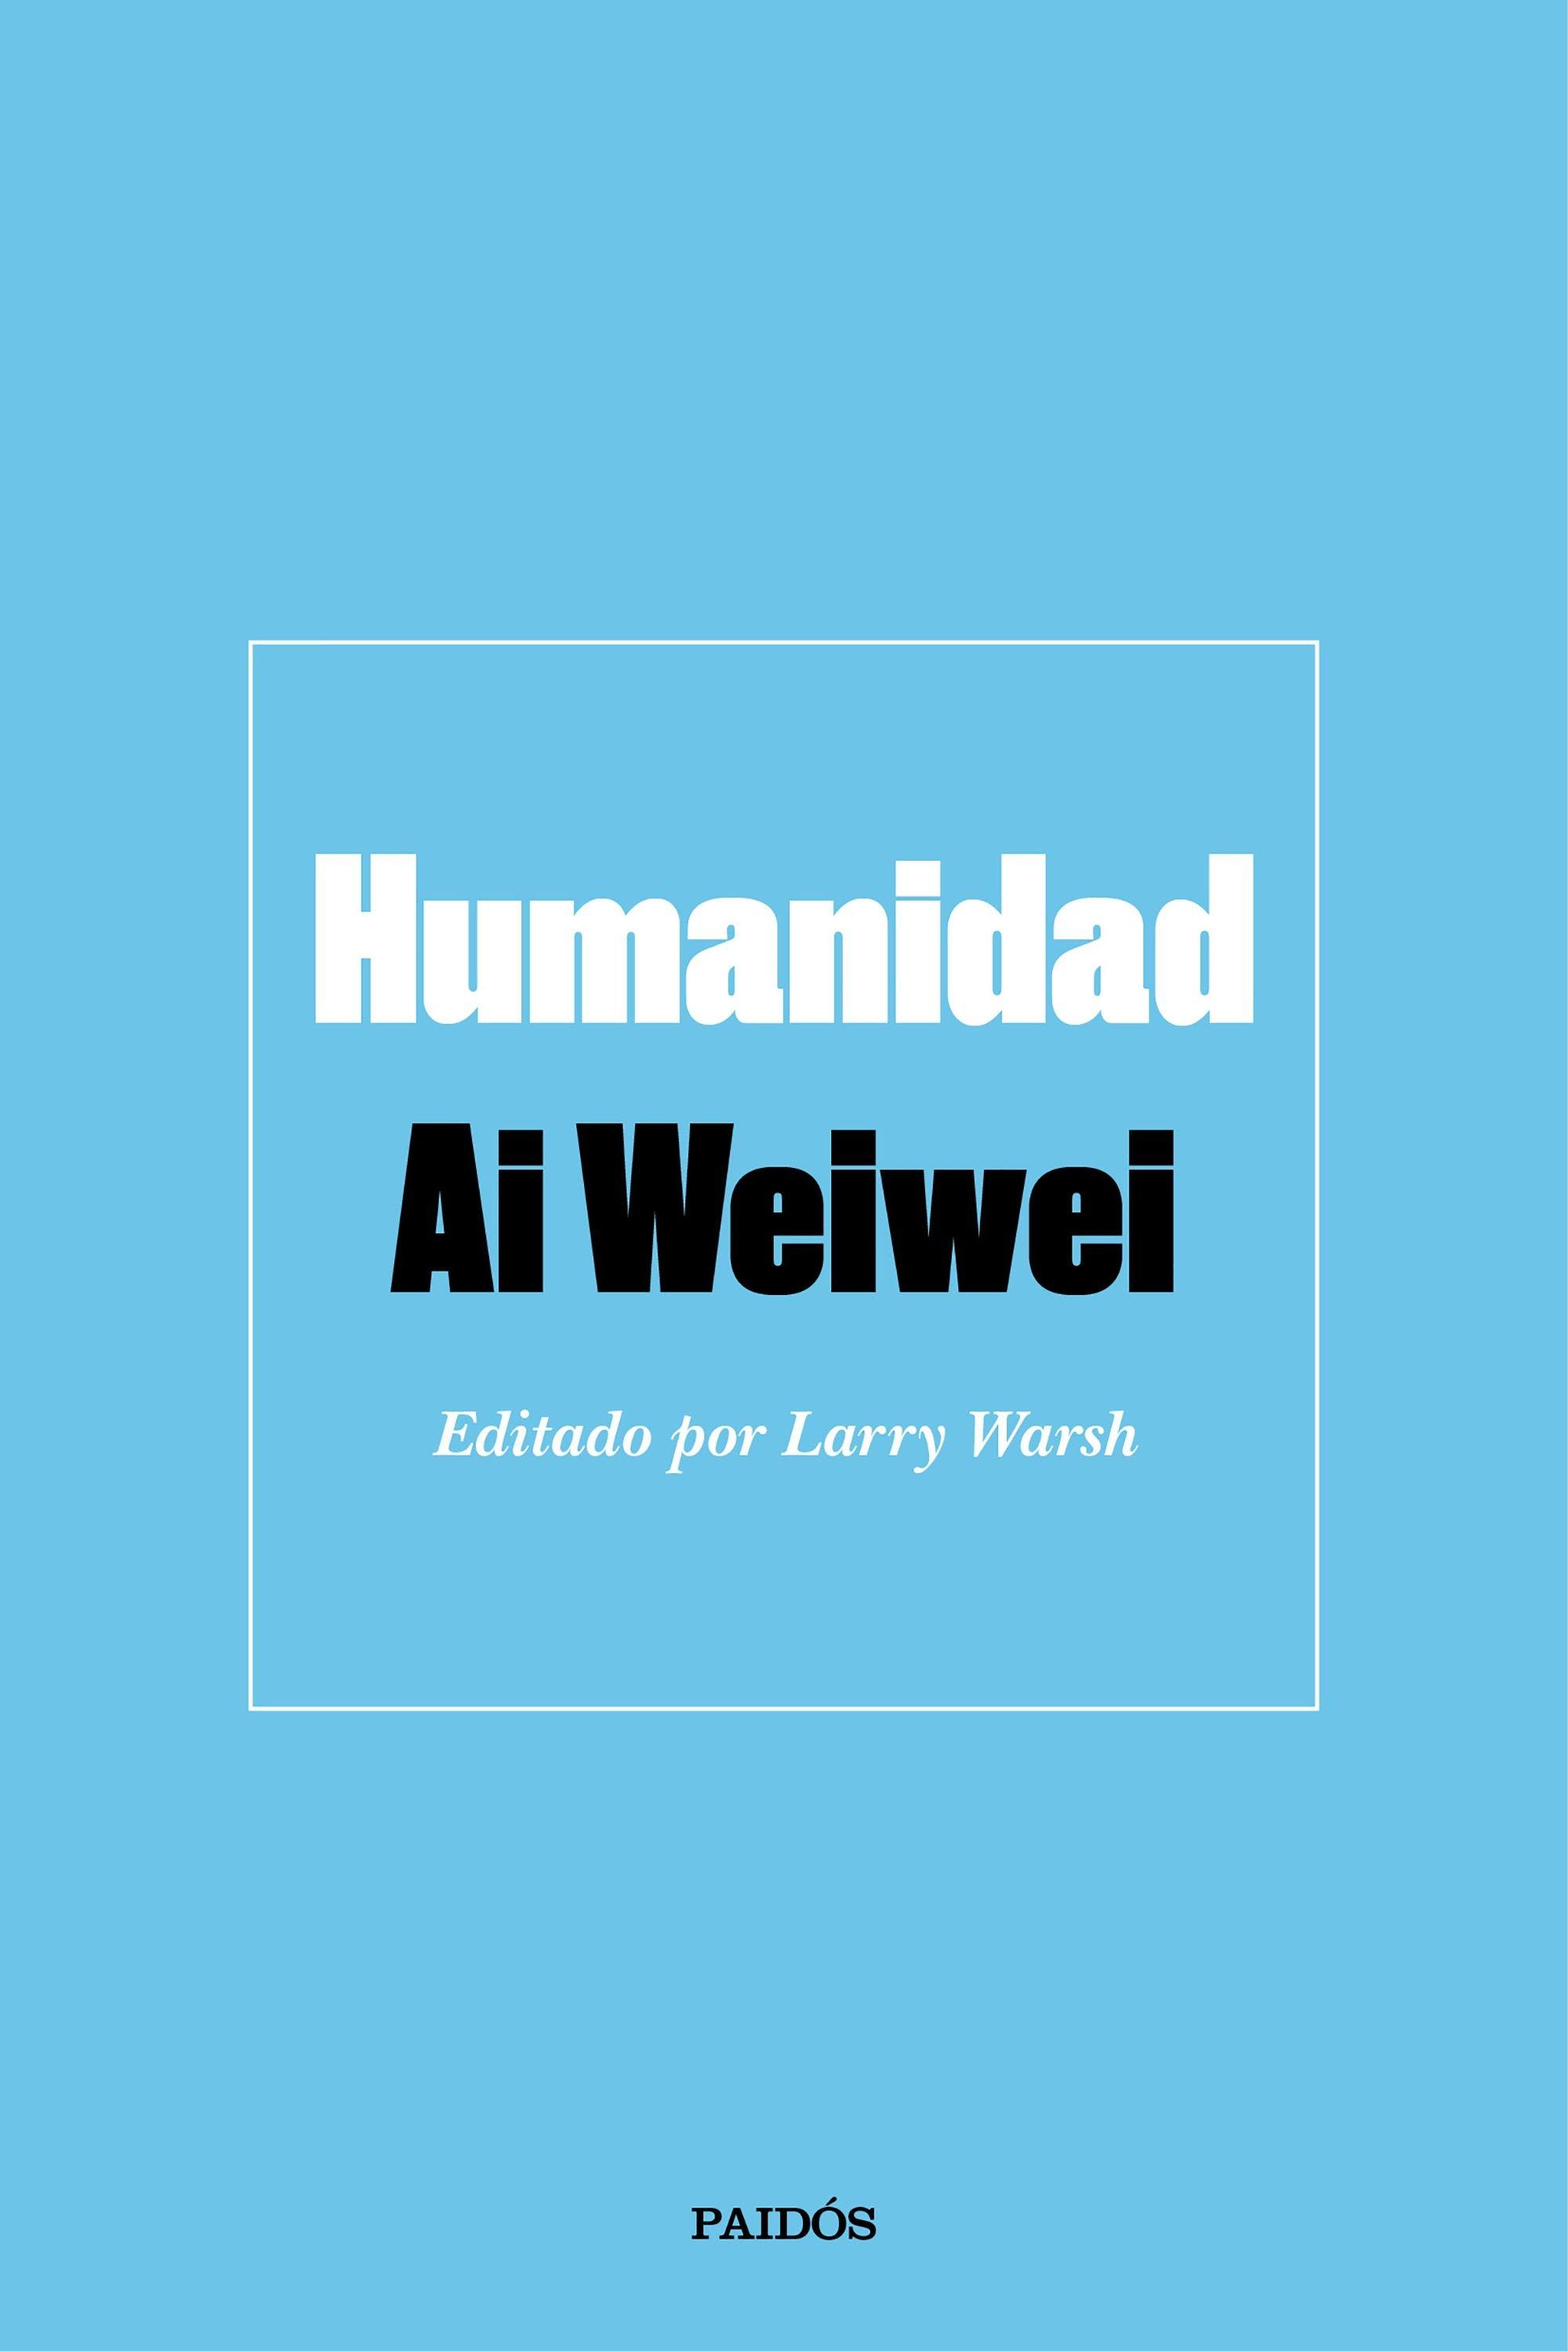 Humanidad "Editado por Larry Warsh"